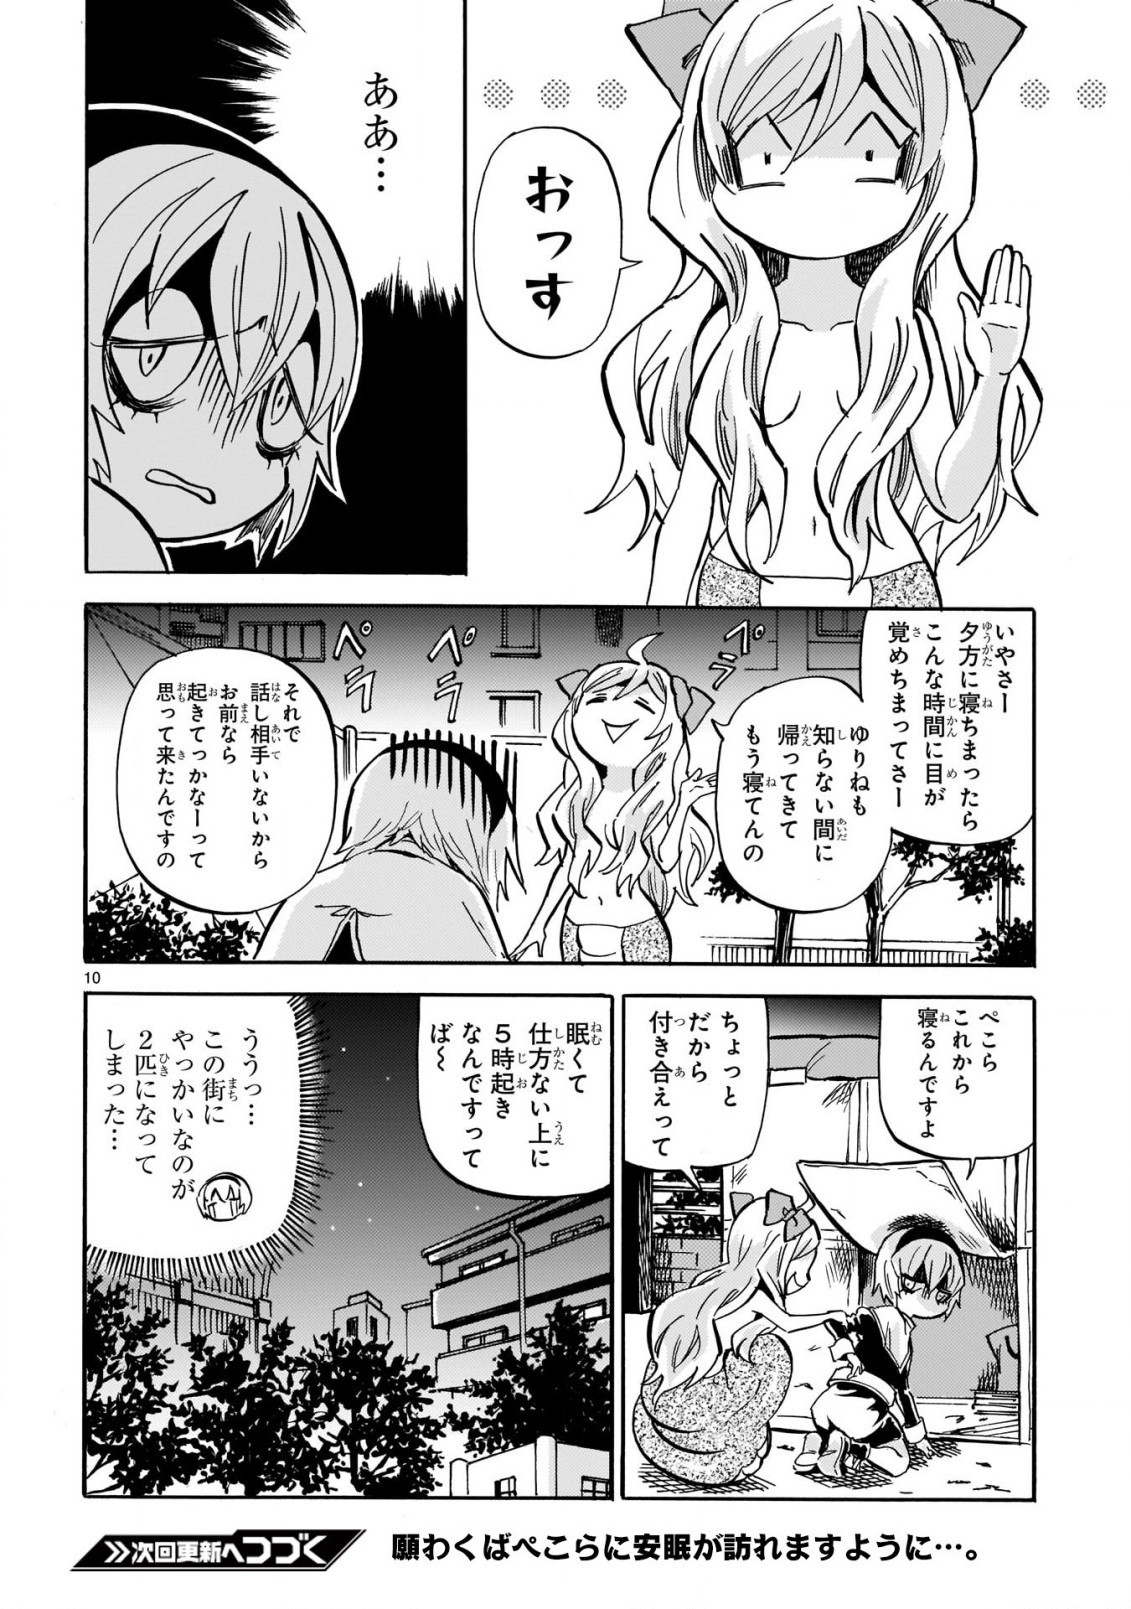 Jashin-chan Dropkick - Chapter 210 - Page 10